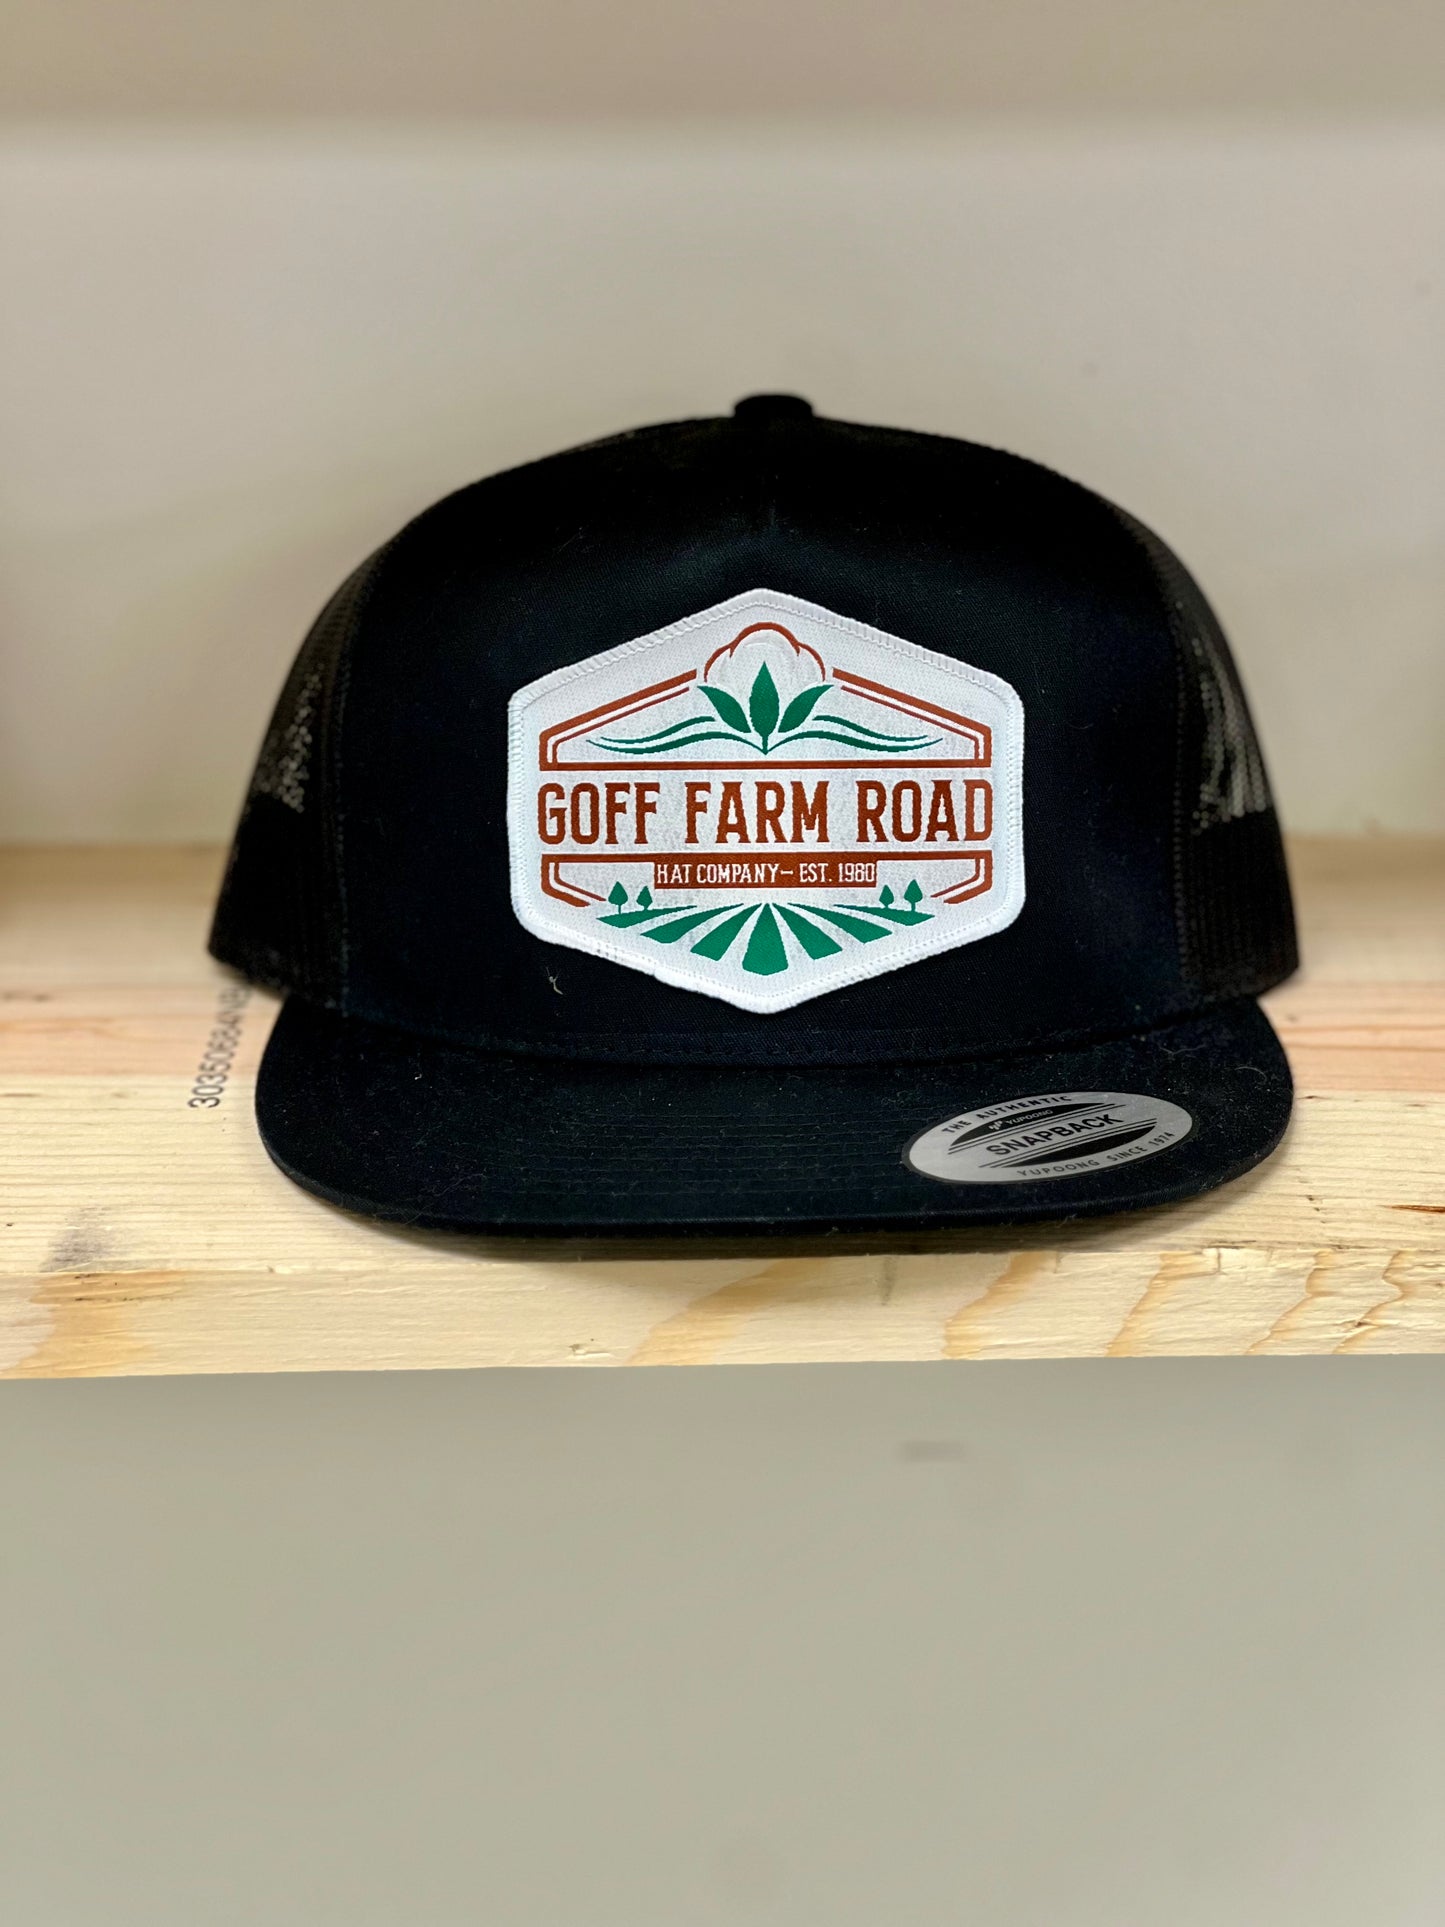 That Company- Goff Farm Rd Hat